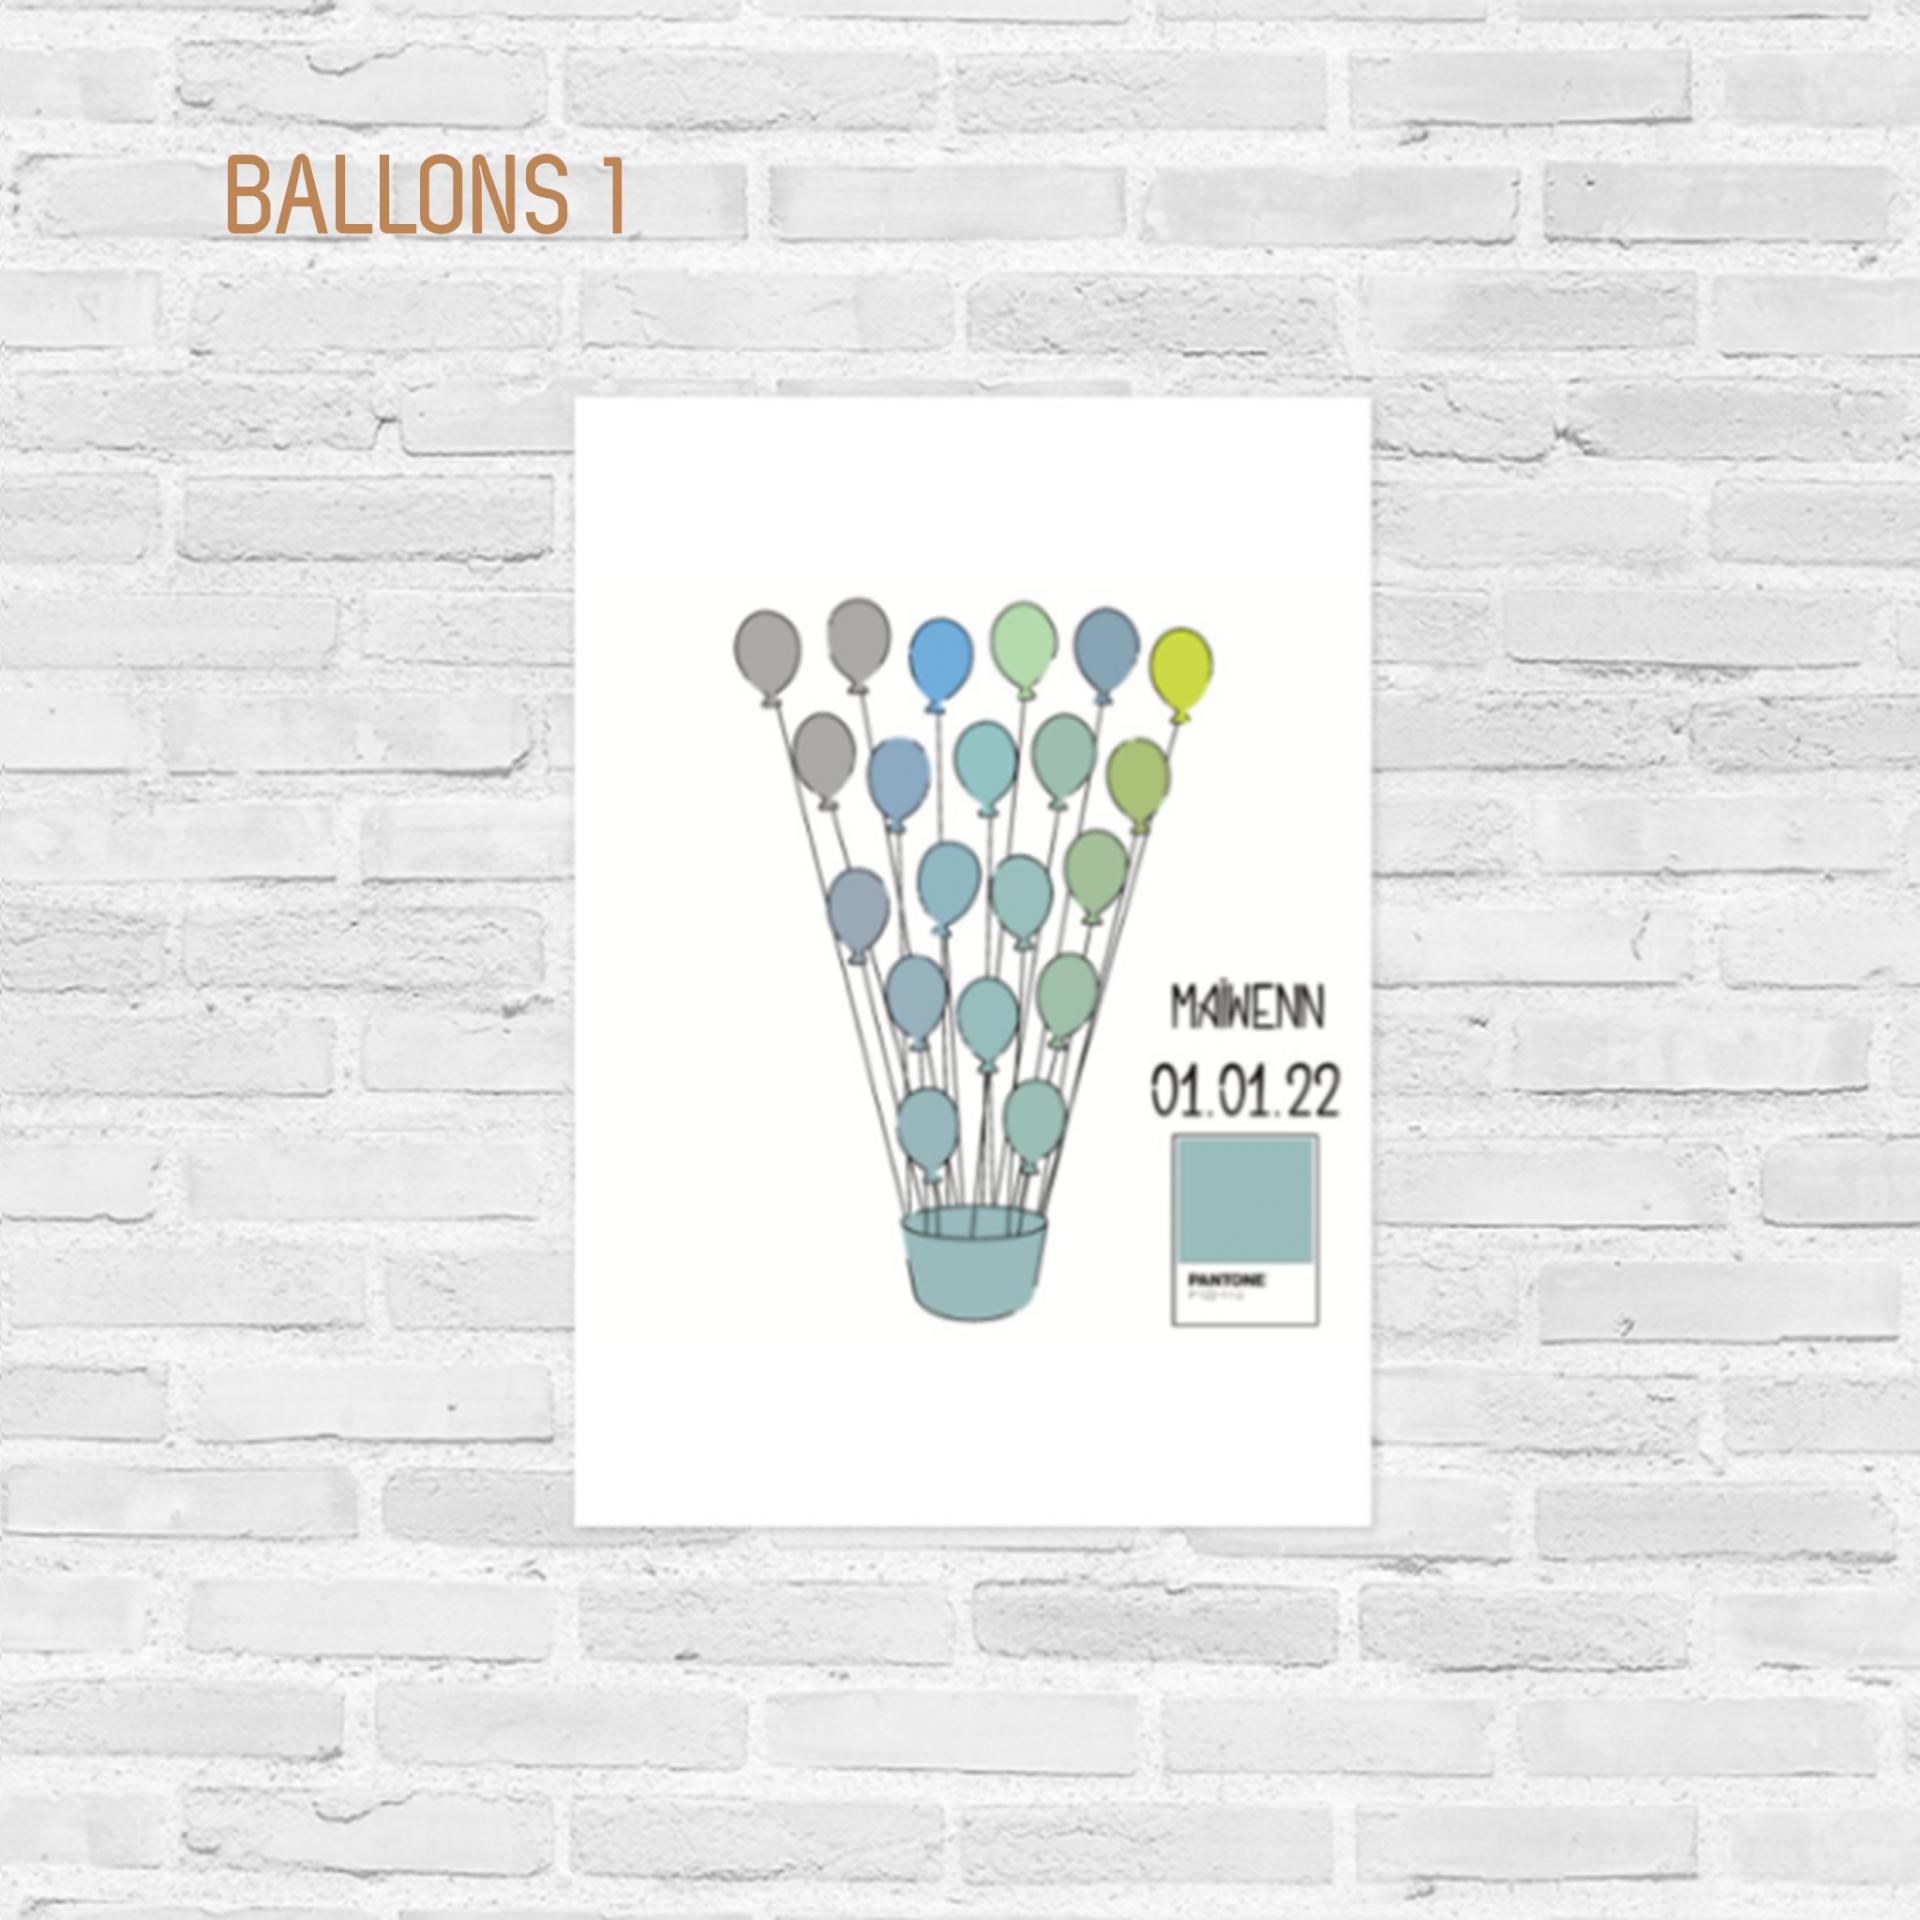 Affiche couleur de naissance Ballons 1 - Atelier Bombus